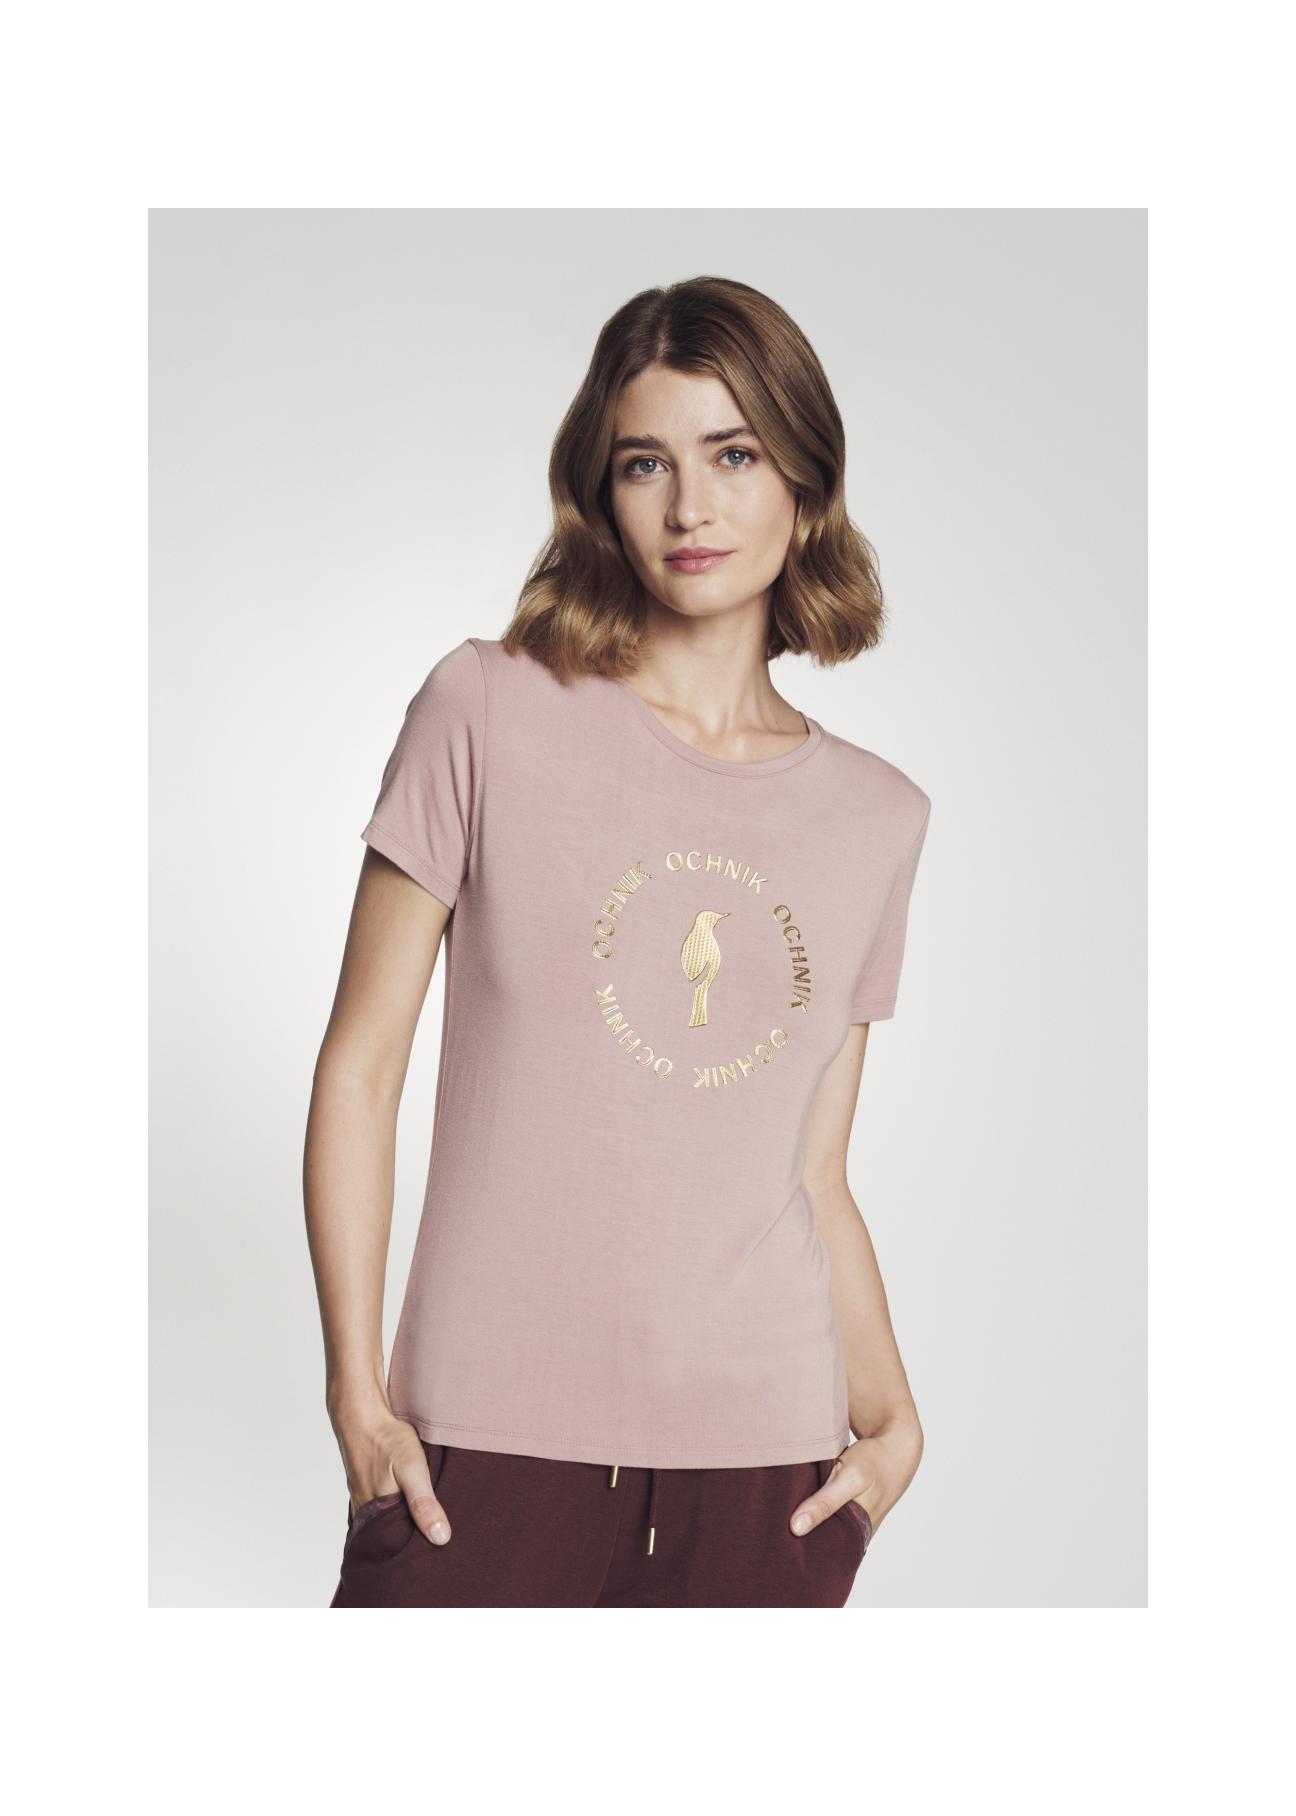 Różowy T-shirt damski z logo OCHNIK TSHDT-0081-34(Z21)-01